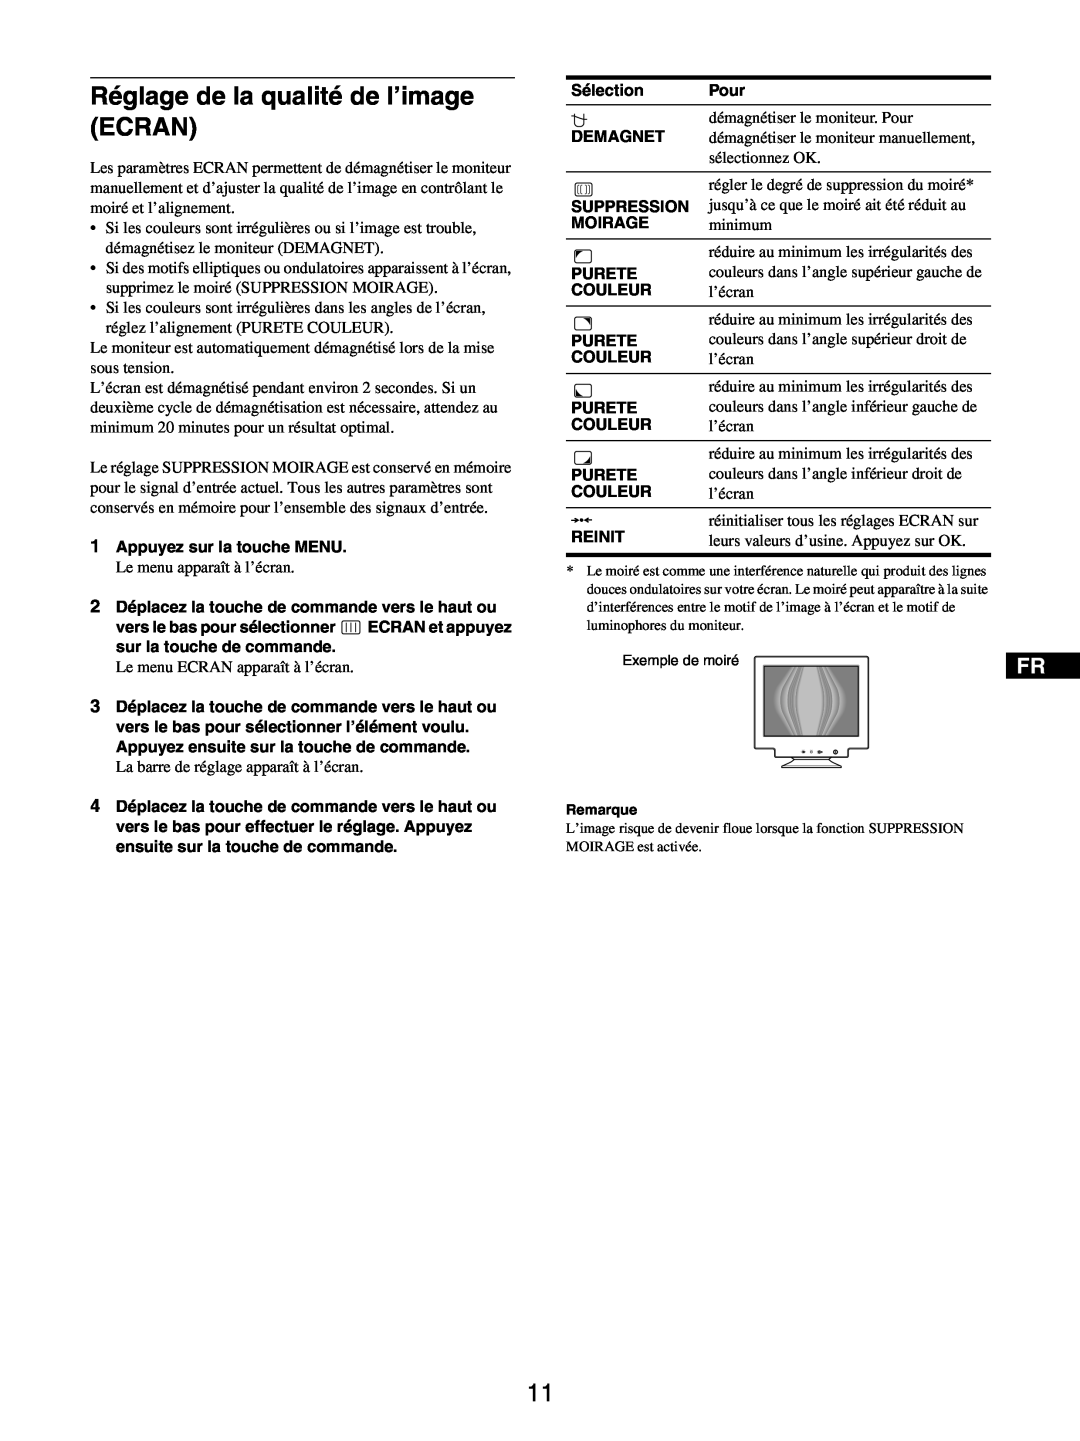 Sony GDM-5510 operating instructions Réglage de la qualité de l’image ECRAN, Exemple de moiré 